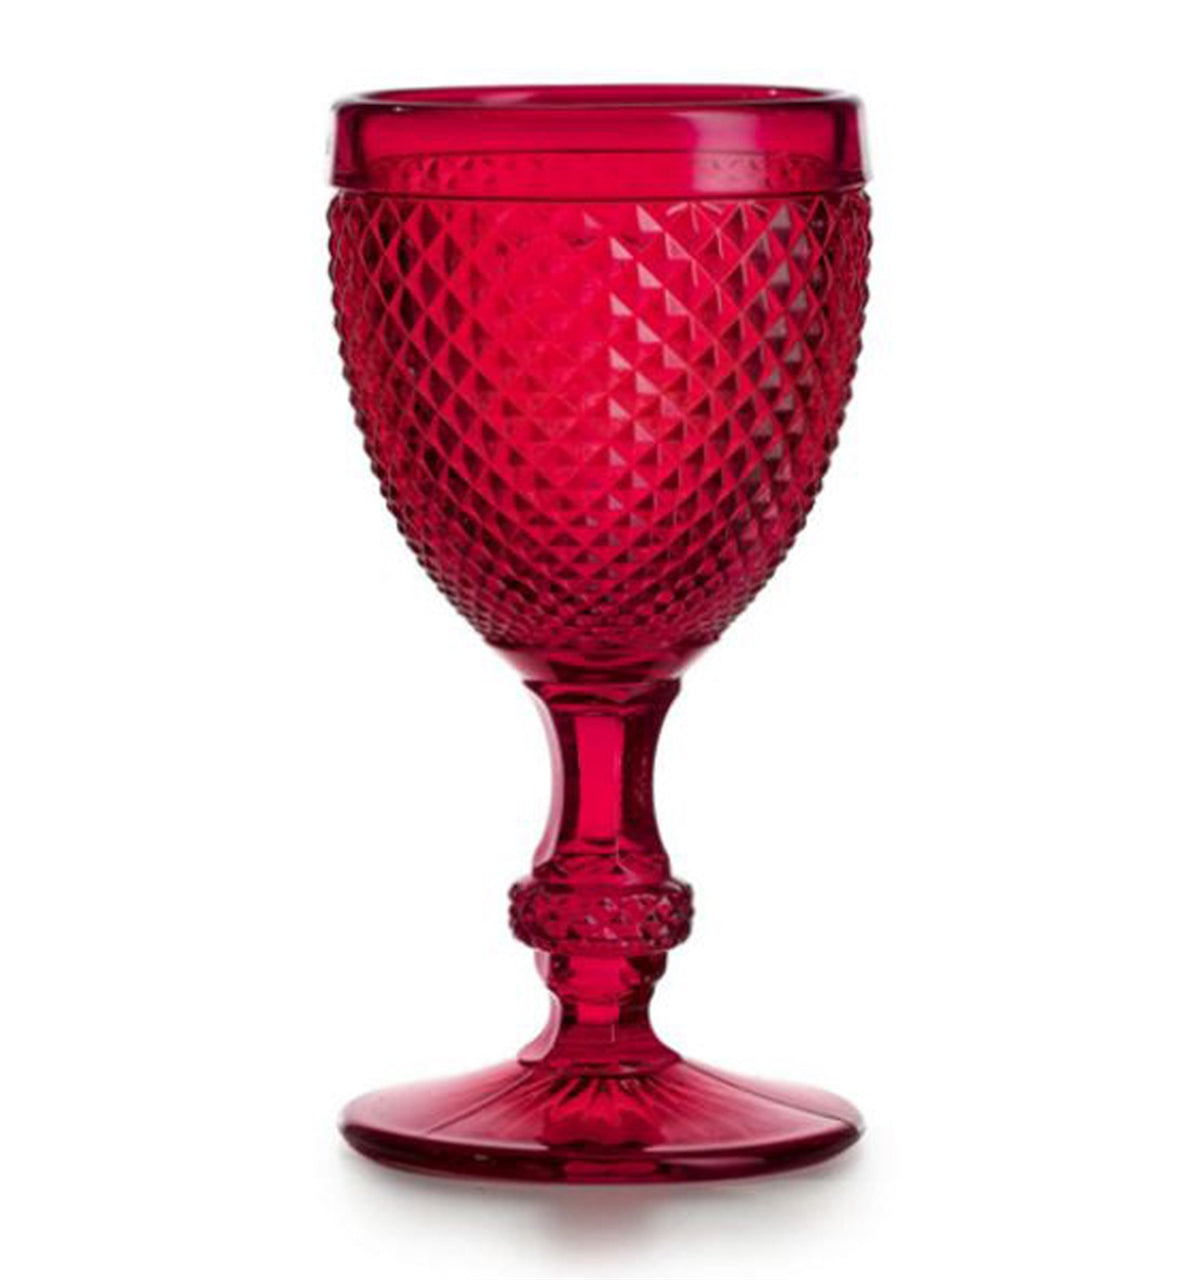 Bicos Vermelho - Set With 4 Red Wine Goblets Red - LAZADO